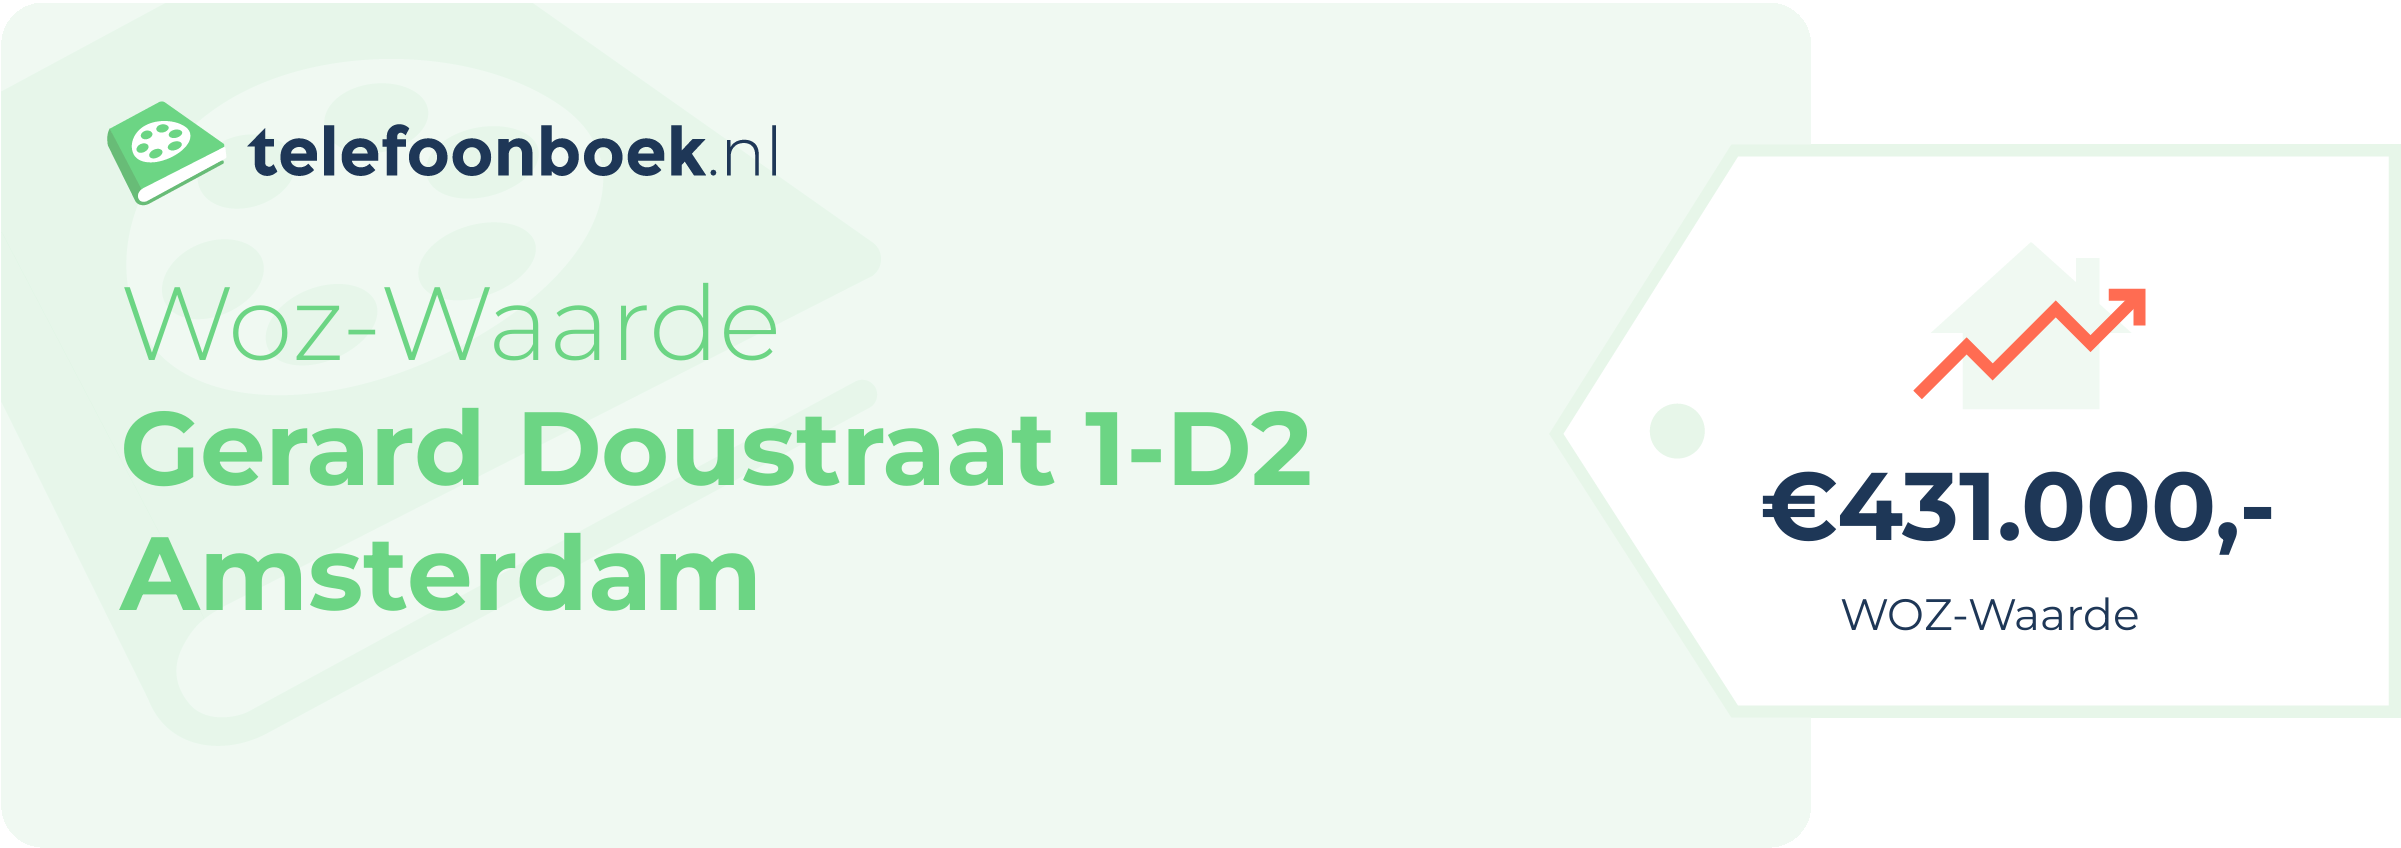 WOZ-waarde Gerard Doustraat 1-D2 Amsterdam